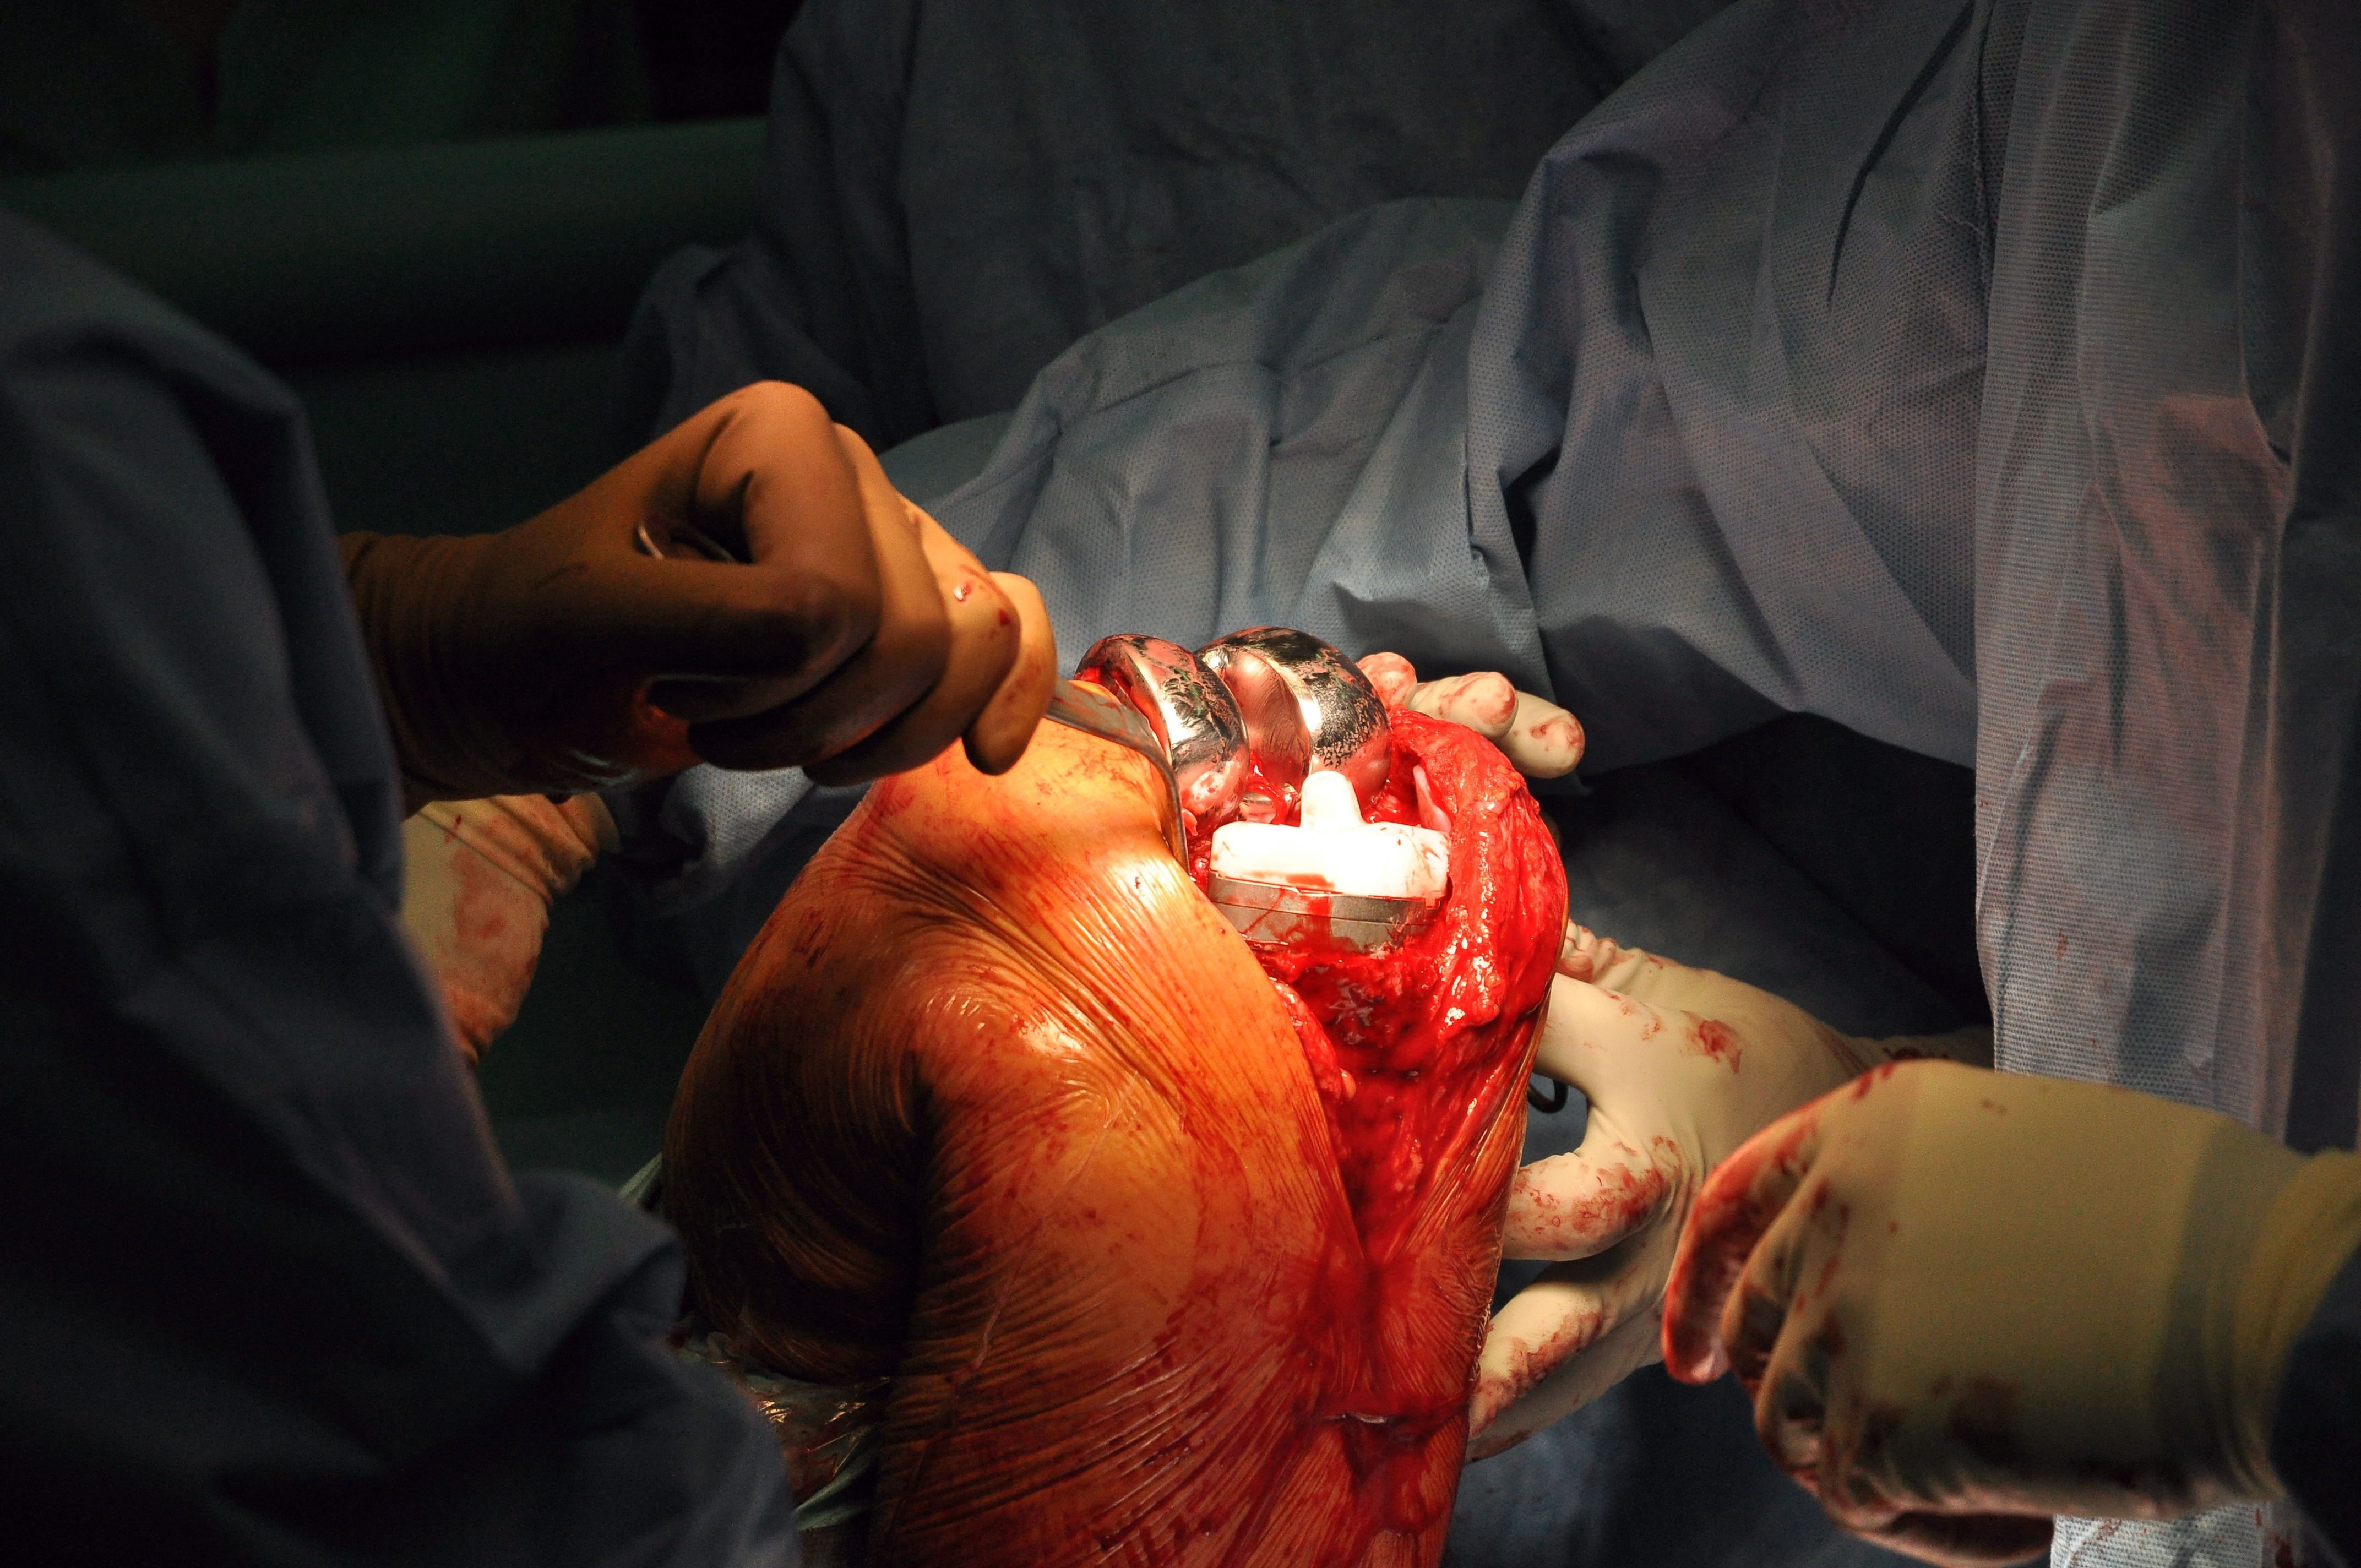 Operacja ukazująca wszczepienie endoprotezy kolana